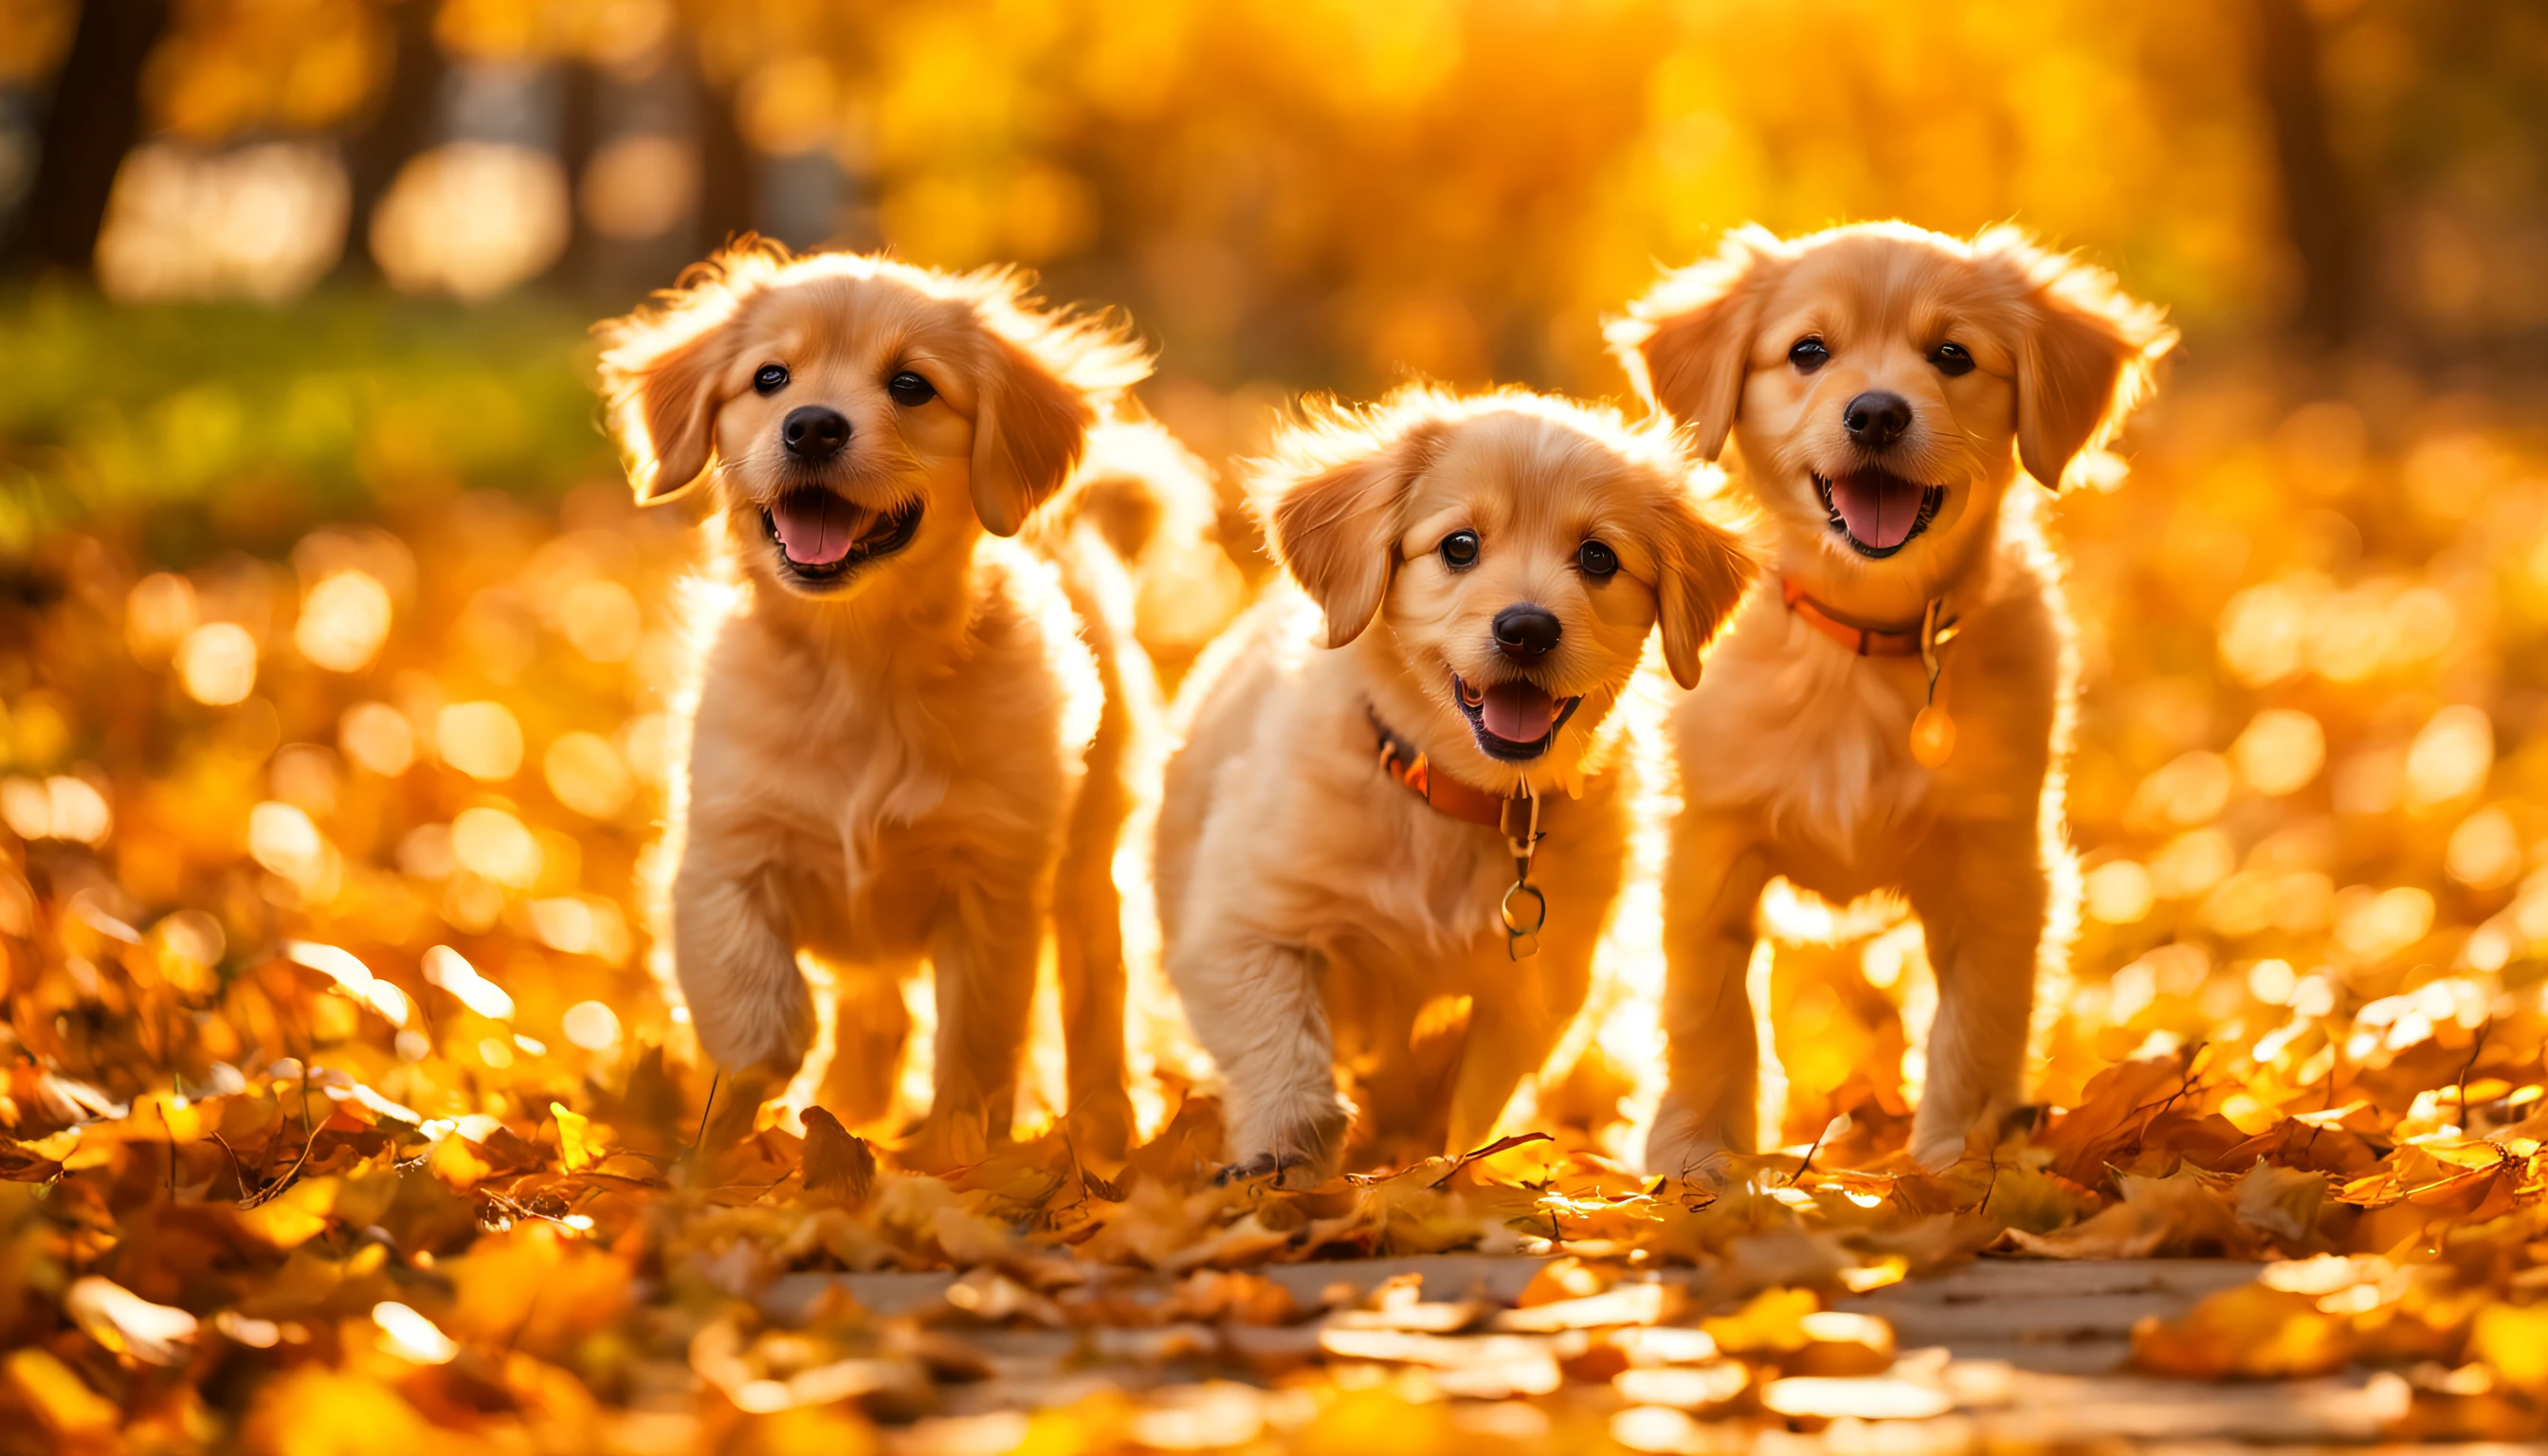 ثلاثة كلاب صغيرة لطيفة في حديقة الخريف المليئة بالأوراق الصفراء المتساقطة,ضوء الشمس الخريفي الناعم, ضوء الشمس في الخريف, صراع الأسهم, ضوء الخريف, ضوء الصباح العنبر المشمس, شروق الشمس في الخريف ضوء دافئ, الخريف الذهبي, مسار تصطف على جانبيه الأشجار عند غروب الشمس, ضوء الخريفs, melancholy ضوء الخريف, عند غروب الشمس في الخريف, الأشعة الذهبية لأشعة الشمس, غابة الخريف, أشعة الشمس الذهبية المرقطة الساطعة